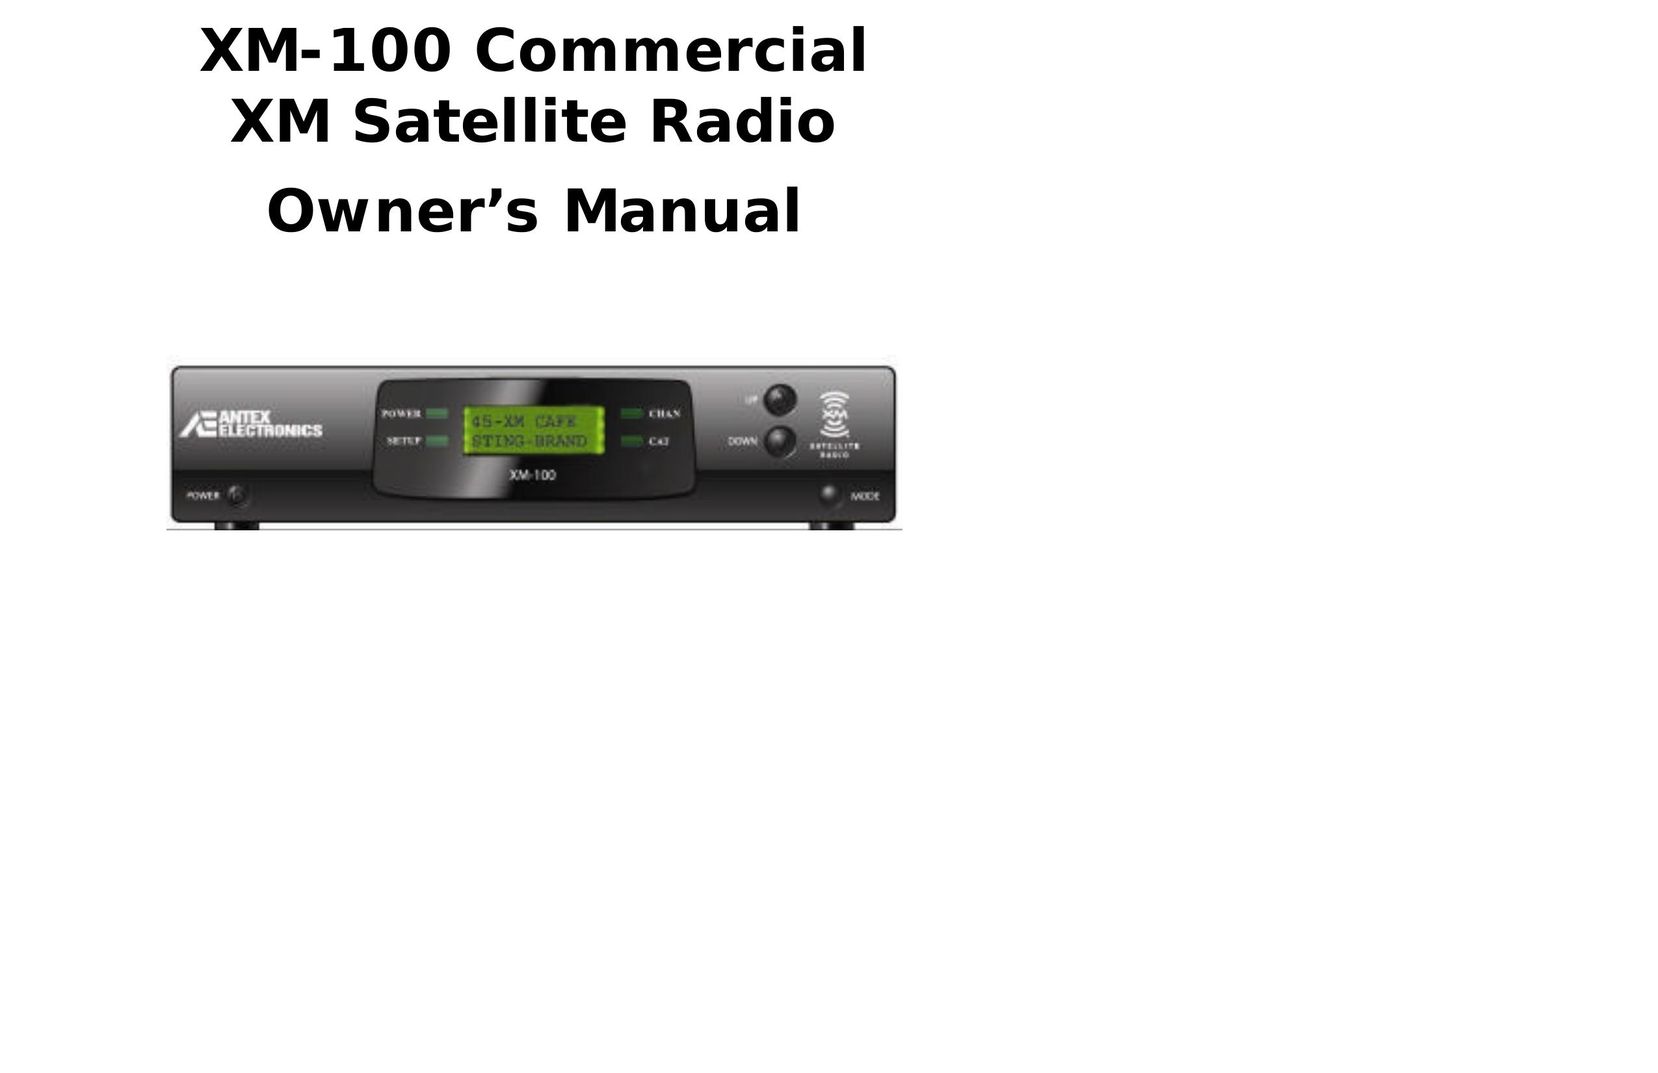 Antex electronic XM-100 Satellite Radio User Manual